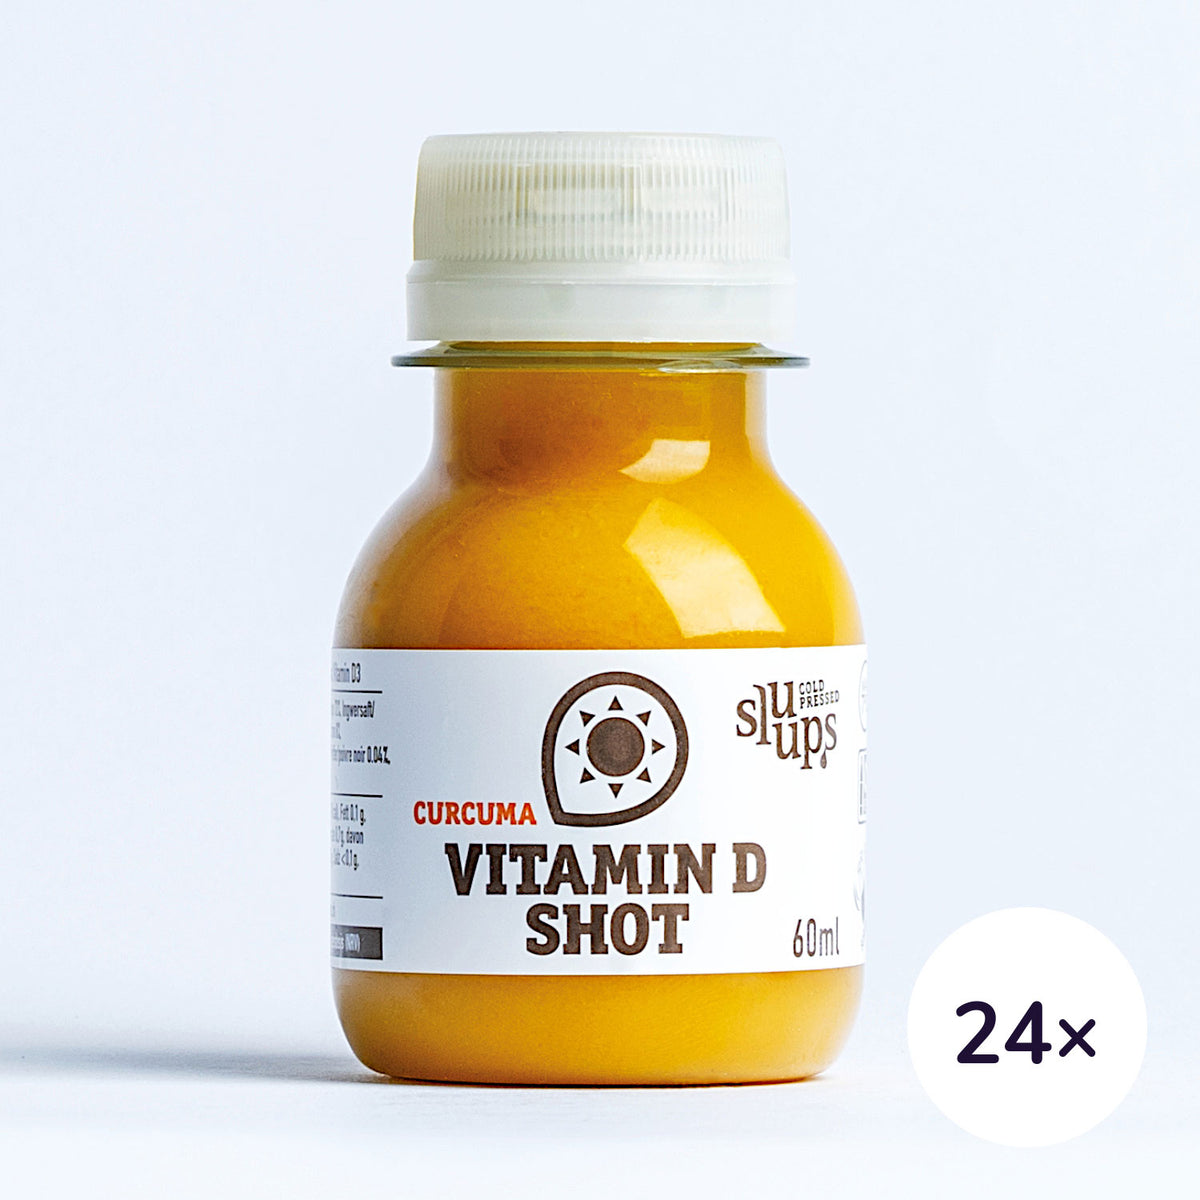 sluups Vitamin D Shot